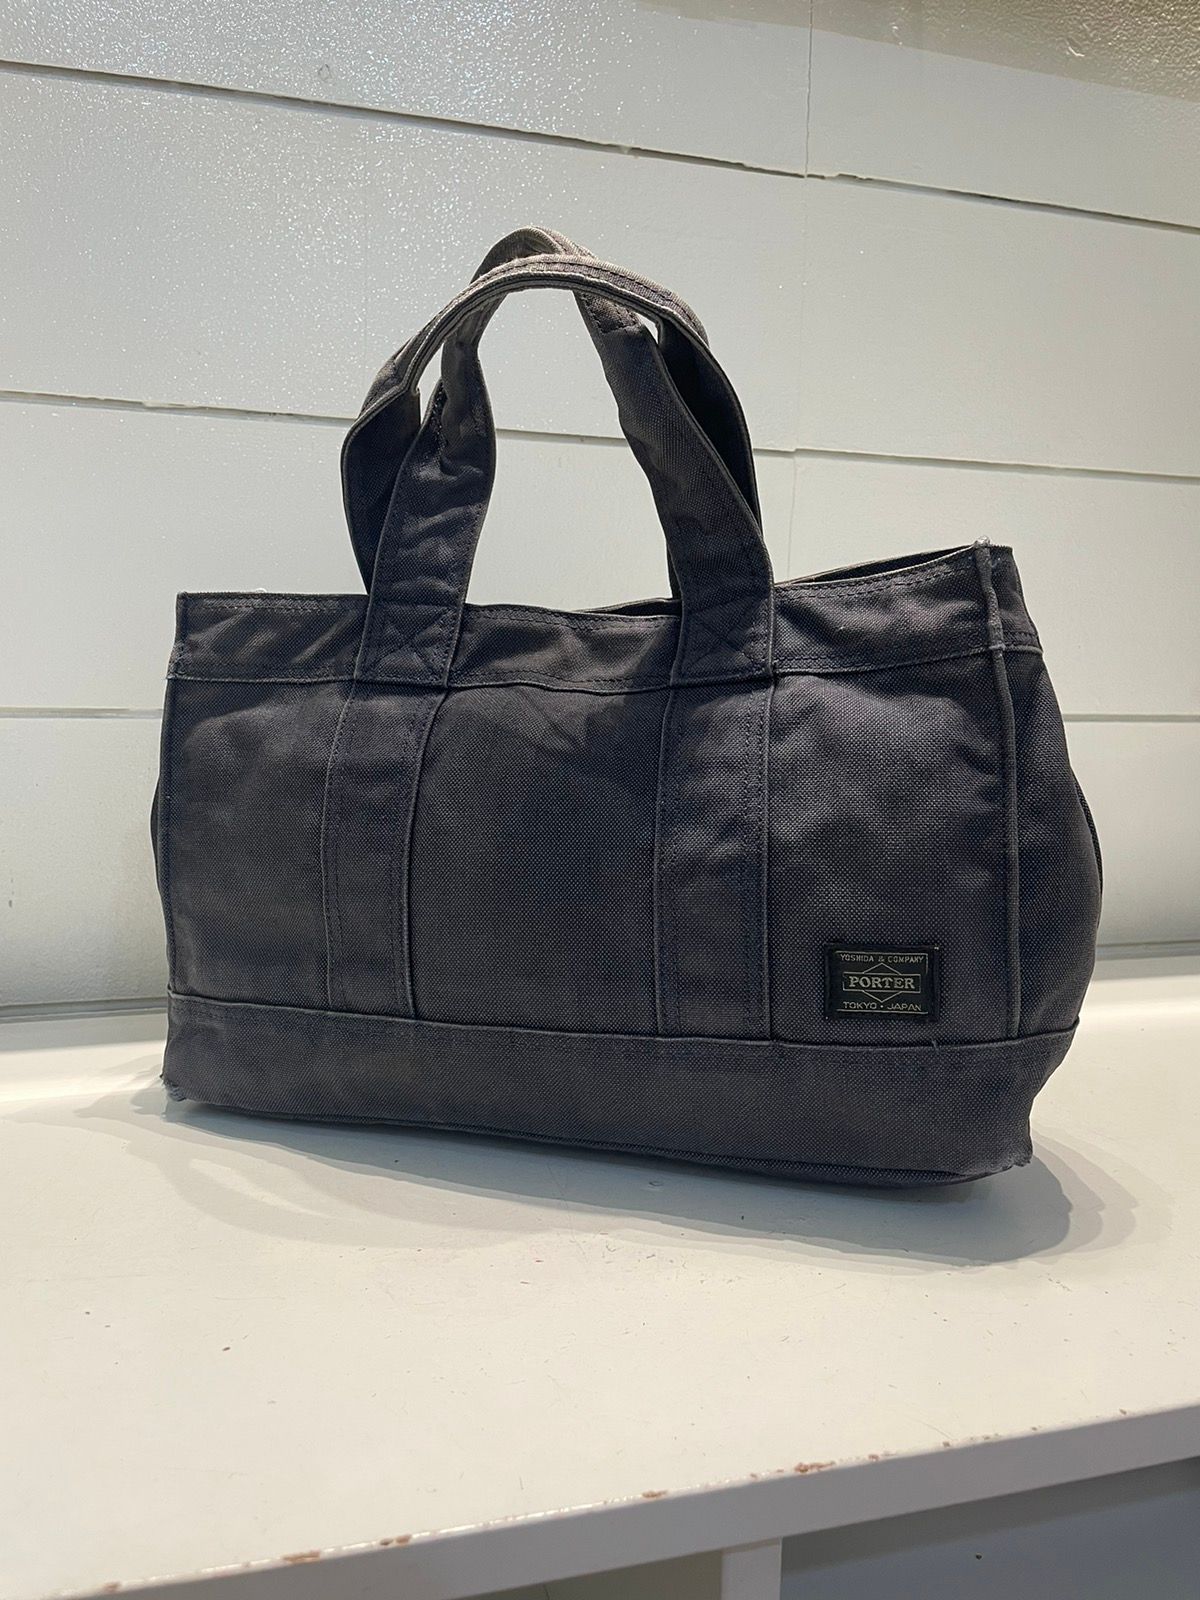 Porter Made In Japan Black Denim Tote Bag Denim Material - 2